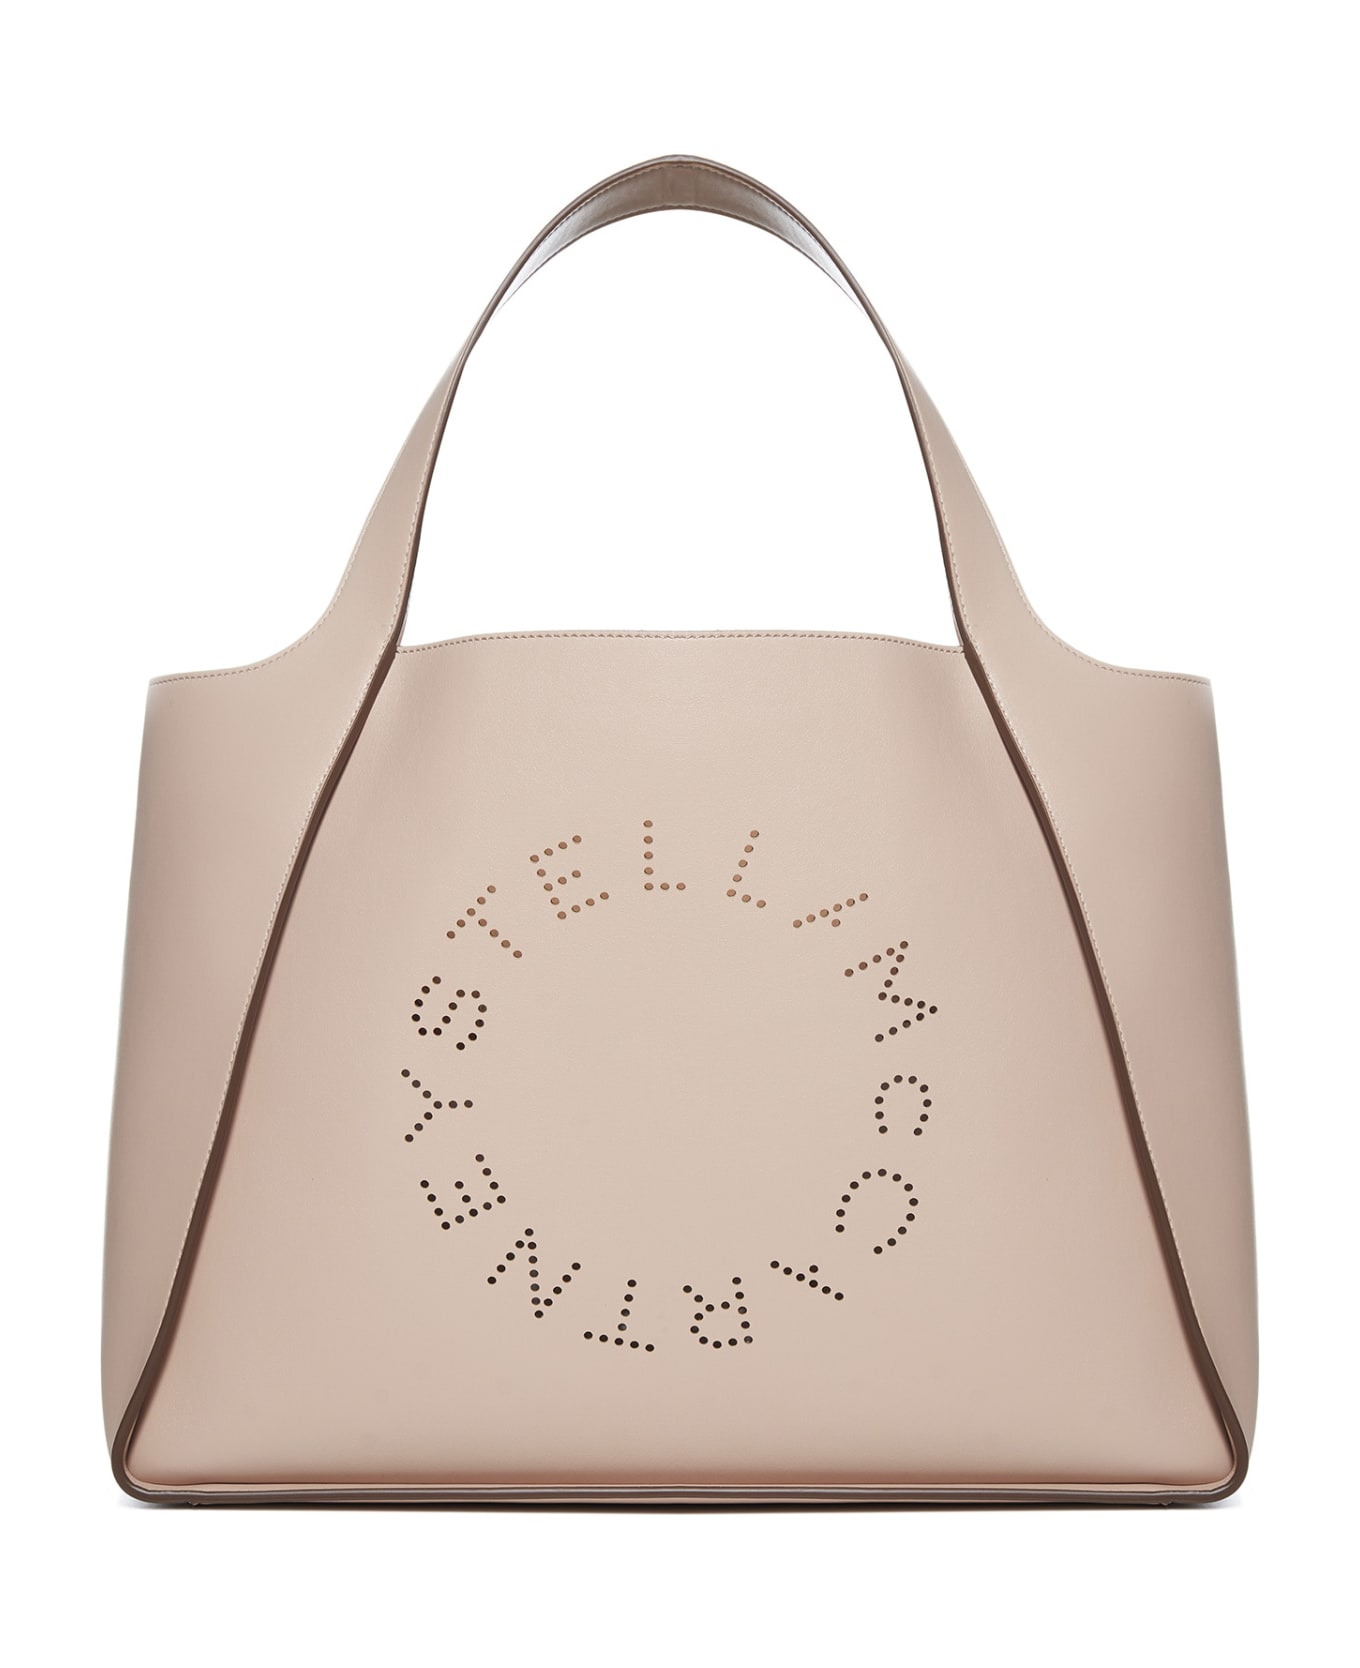 Stella McCartney Tote Bag With Logo - Pink